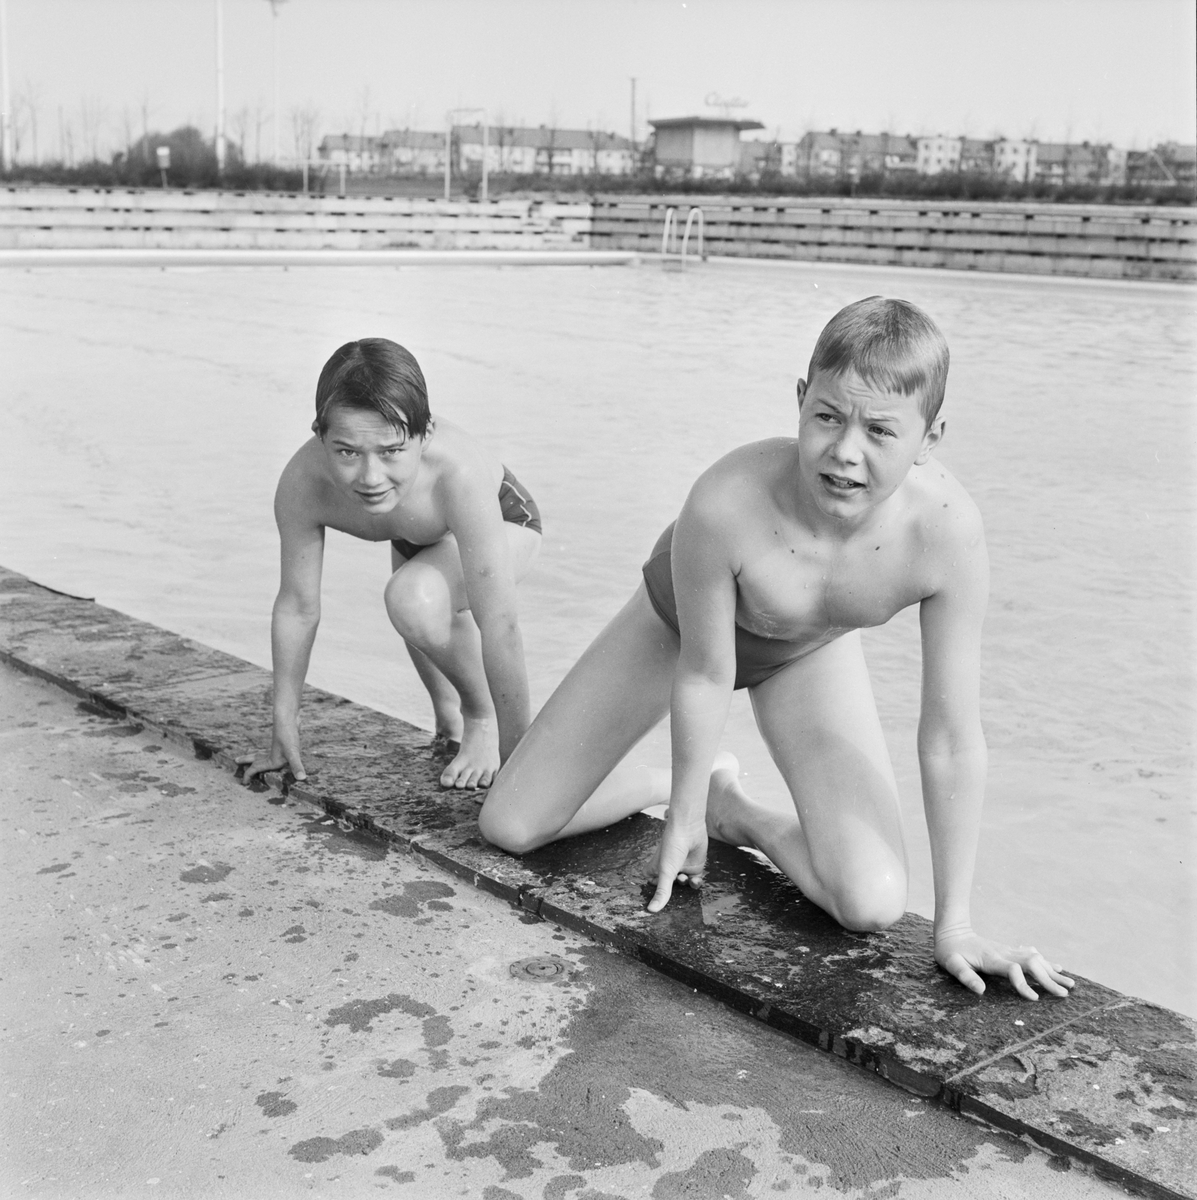 "Fyrisbadets 4:e säsong öppnades med 559 besök", Uppsala 1962